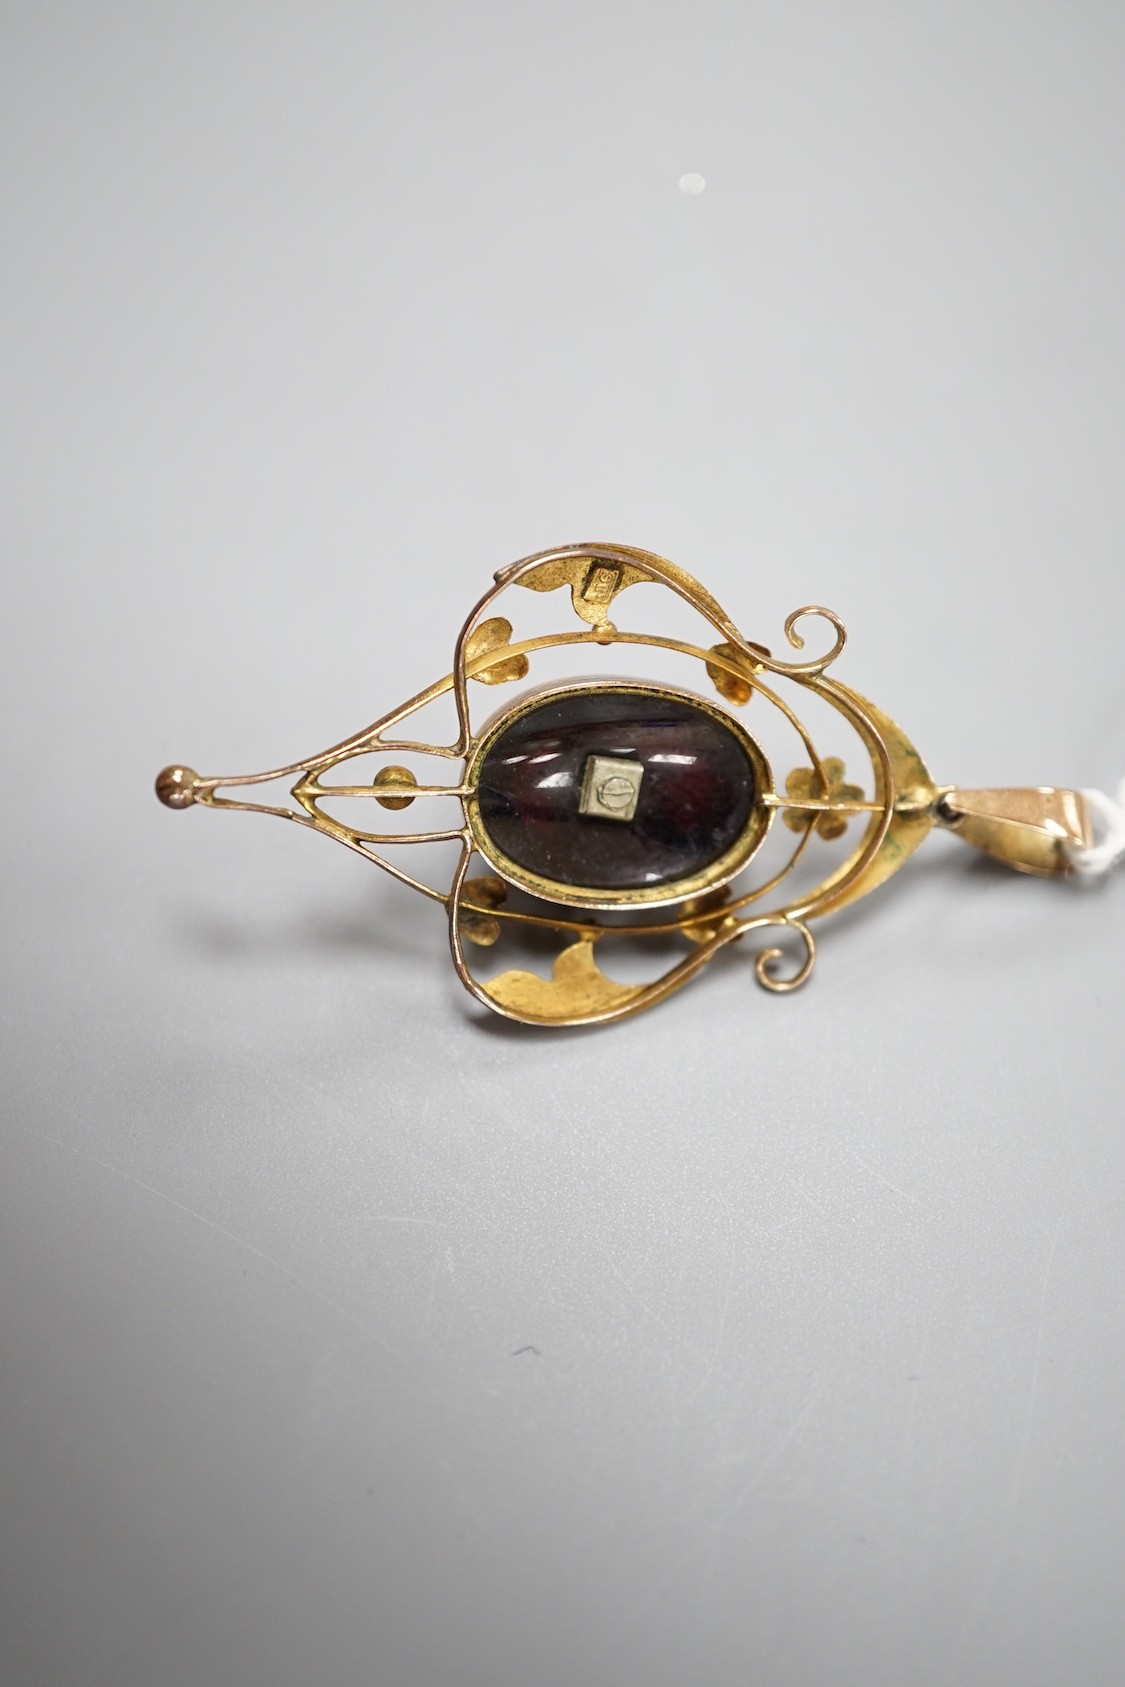 An Edwardian Art Nouveau 9ct, garnet, split pearl and diamond set pendant, overall 57mm, gross weight 6.8 grams.